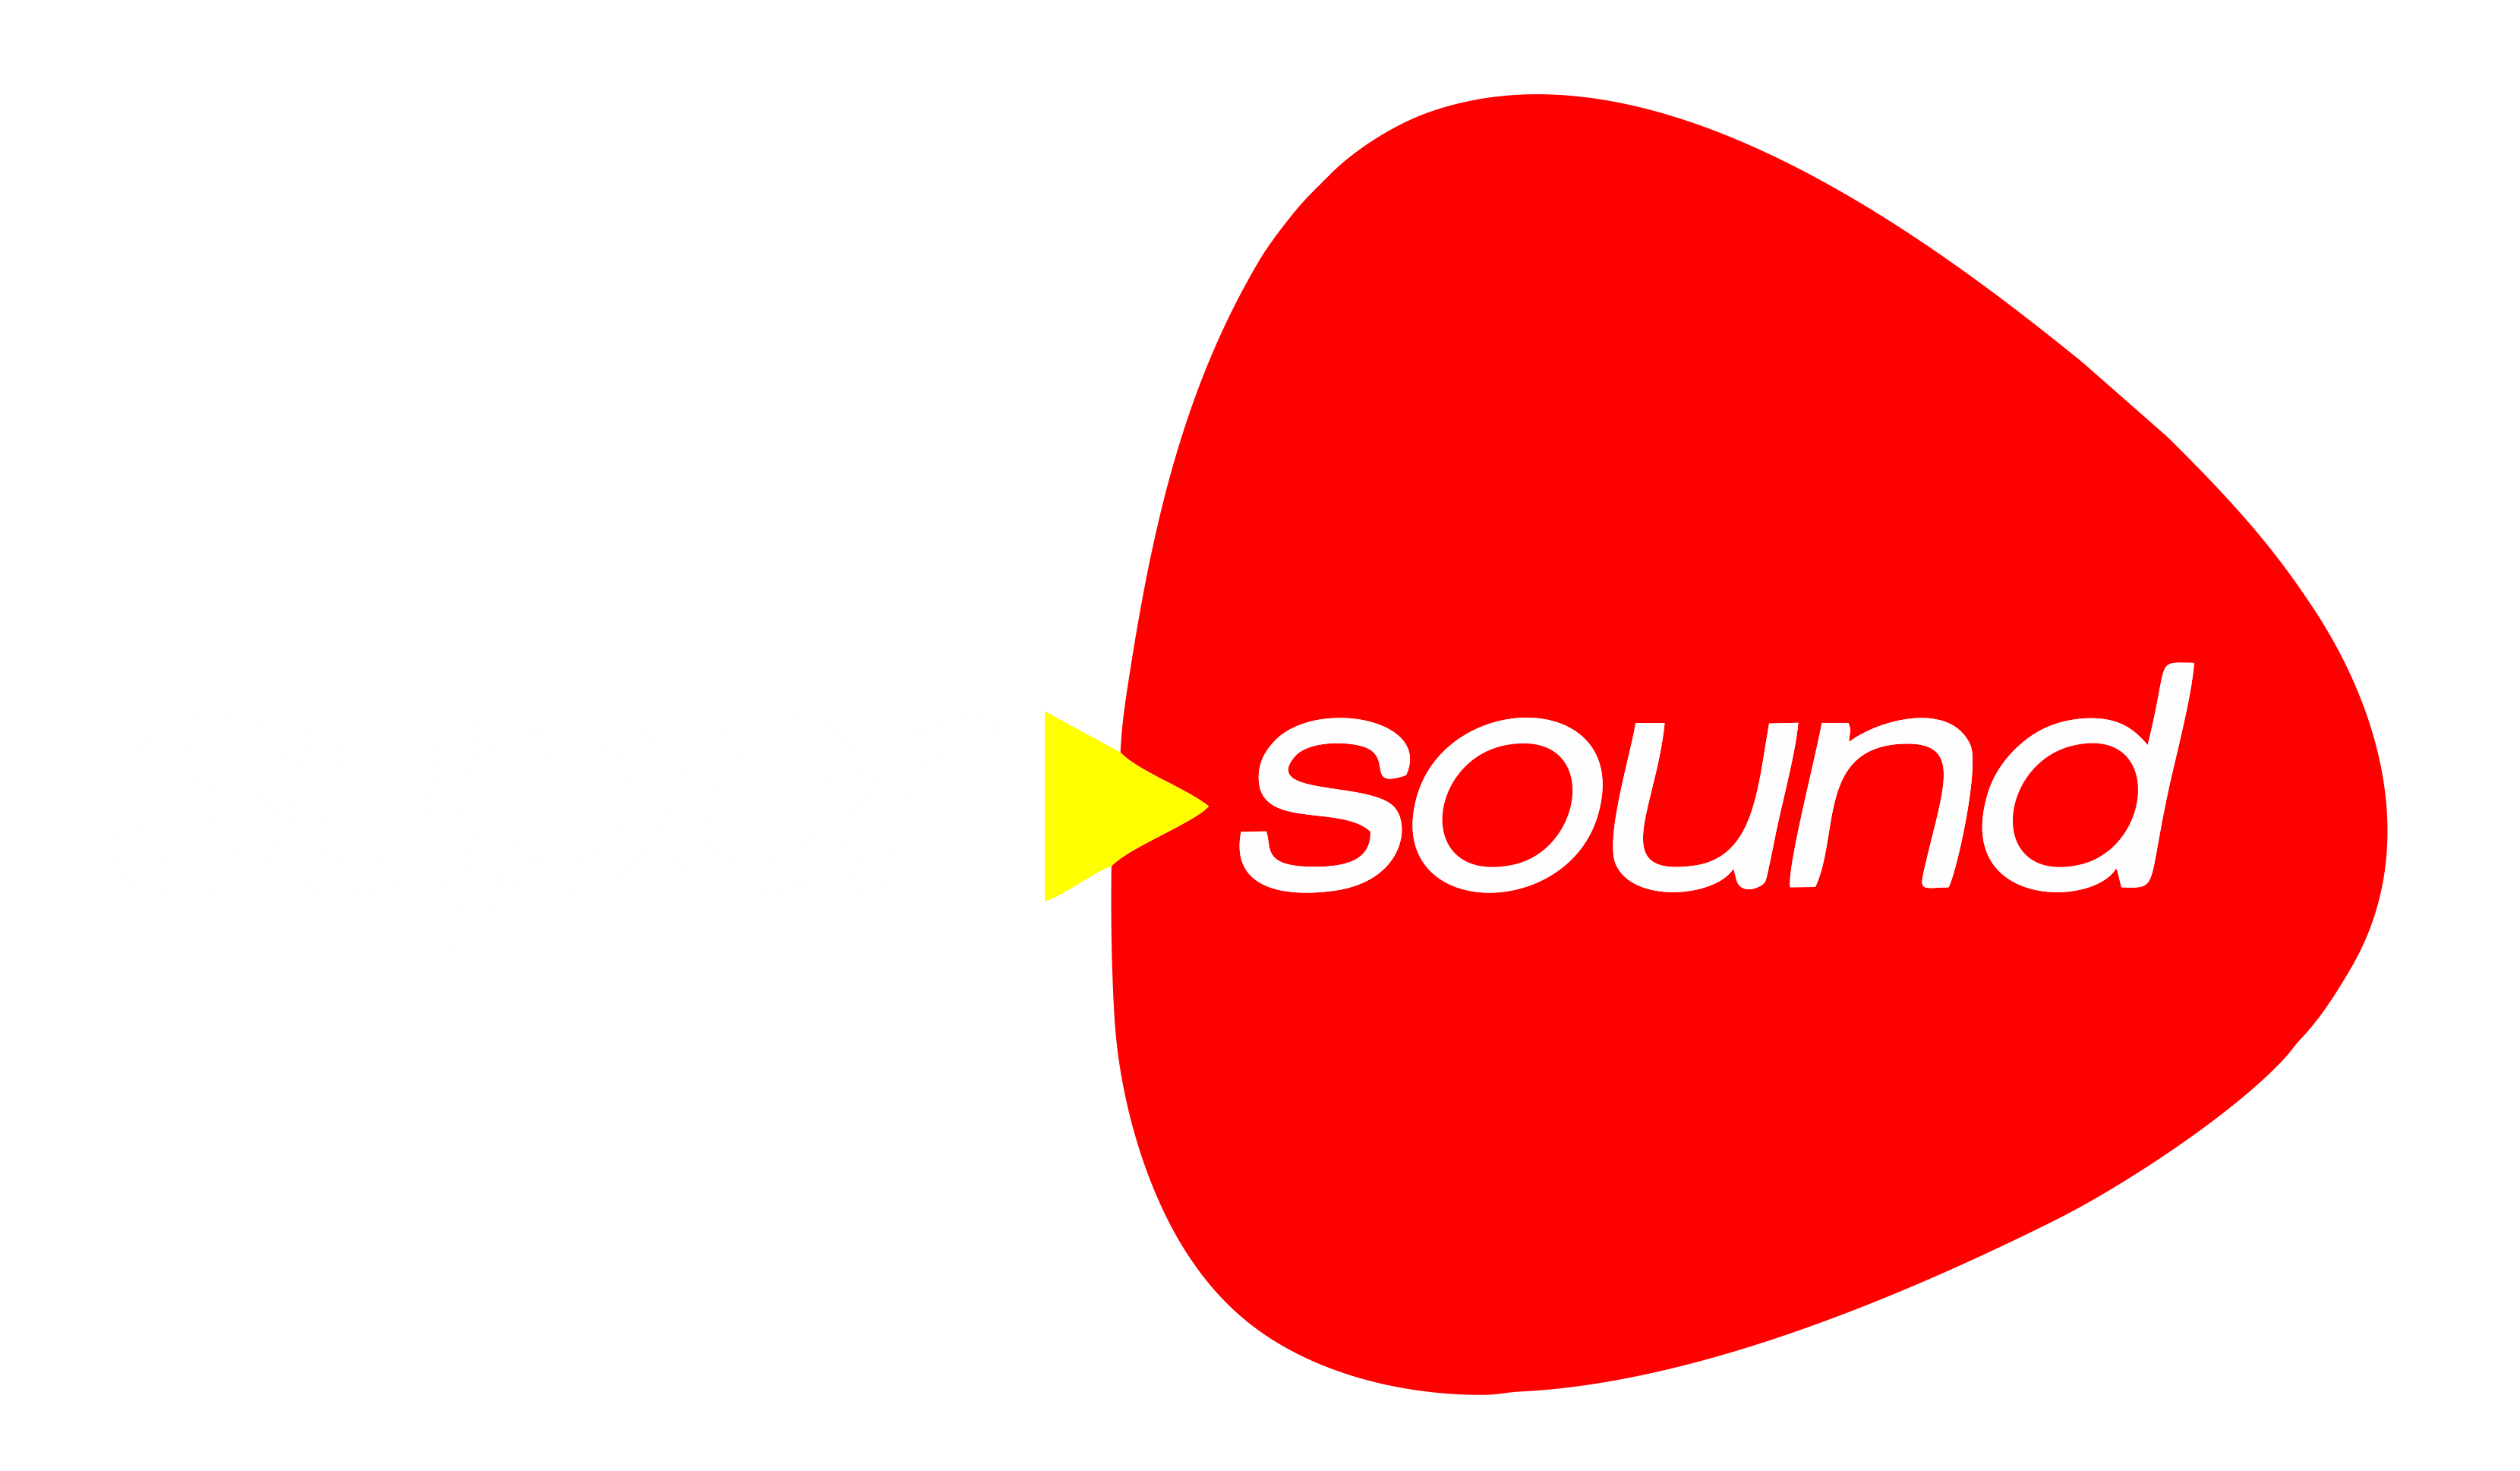 Super sound